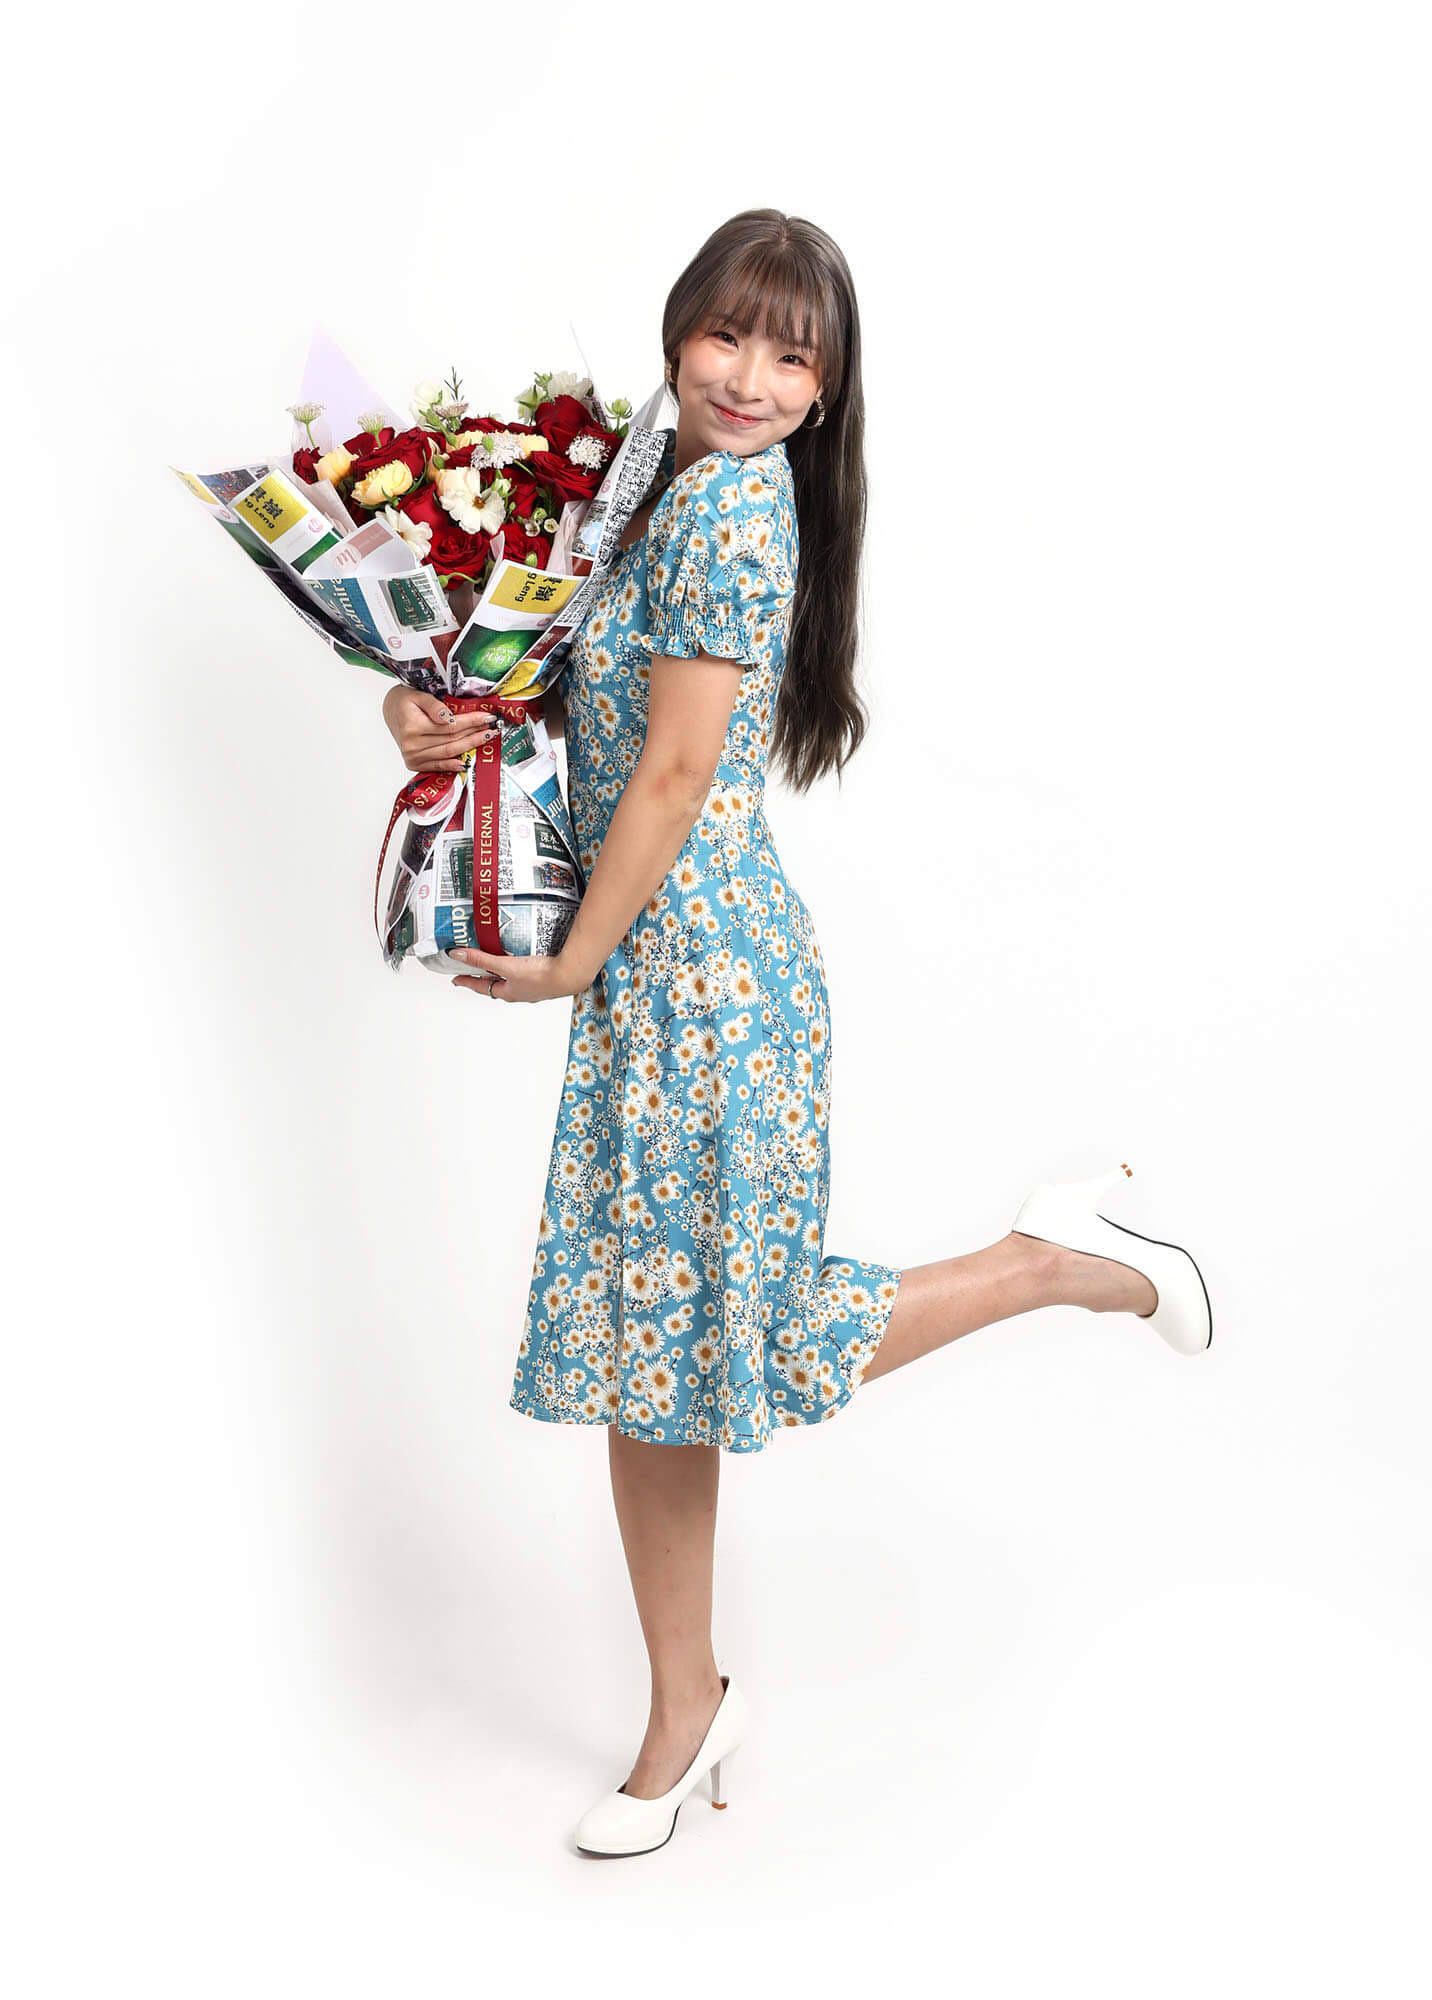 國際花束, 花店香港, Moon Florist香港花店 -model02